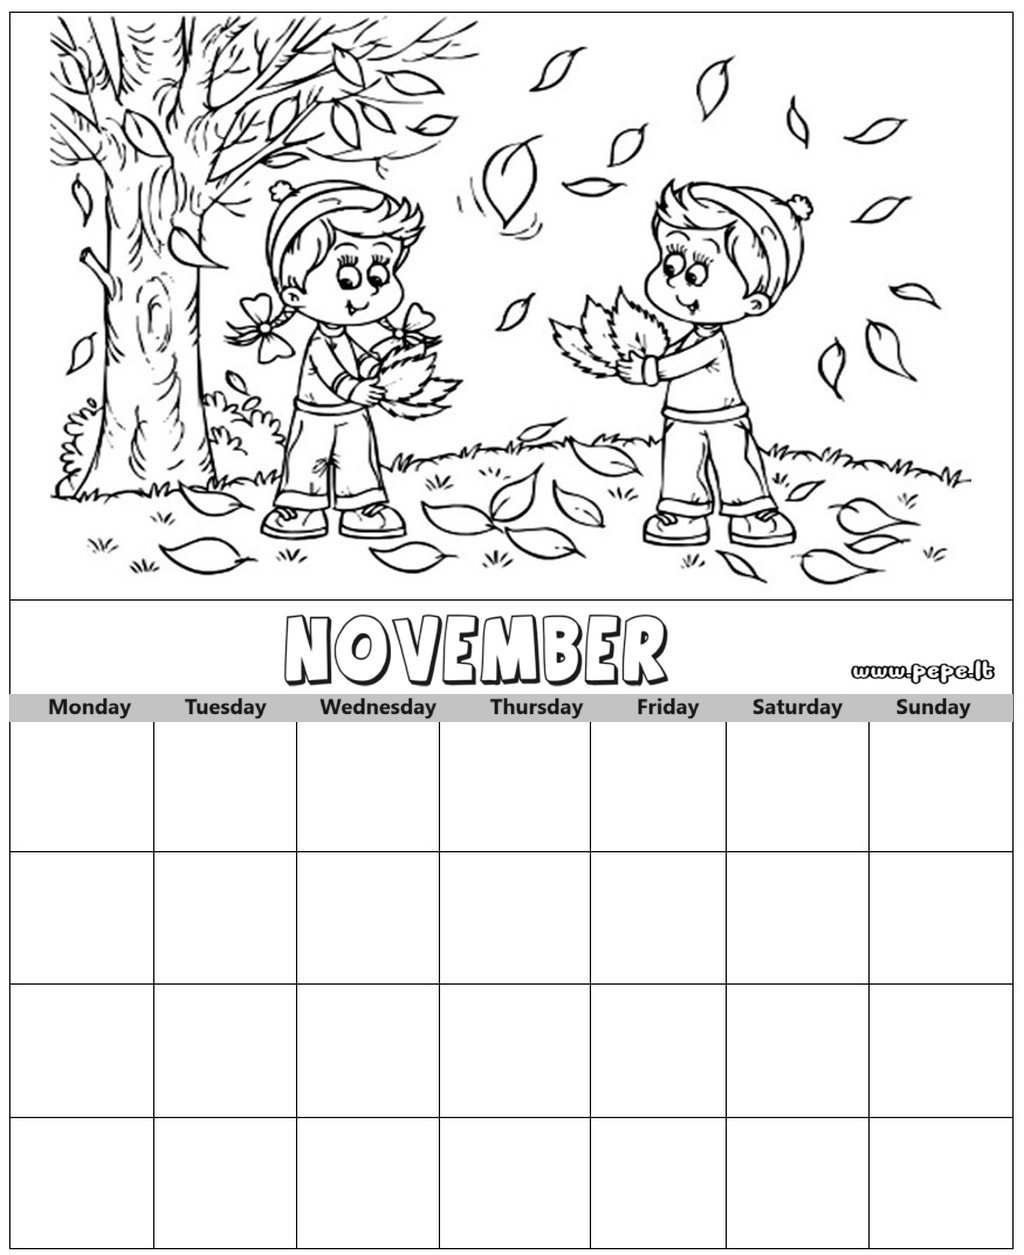 November calendar coloring